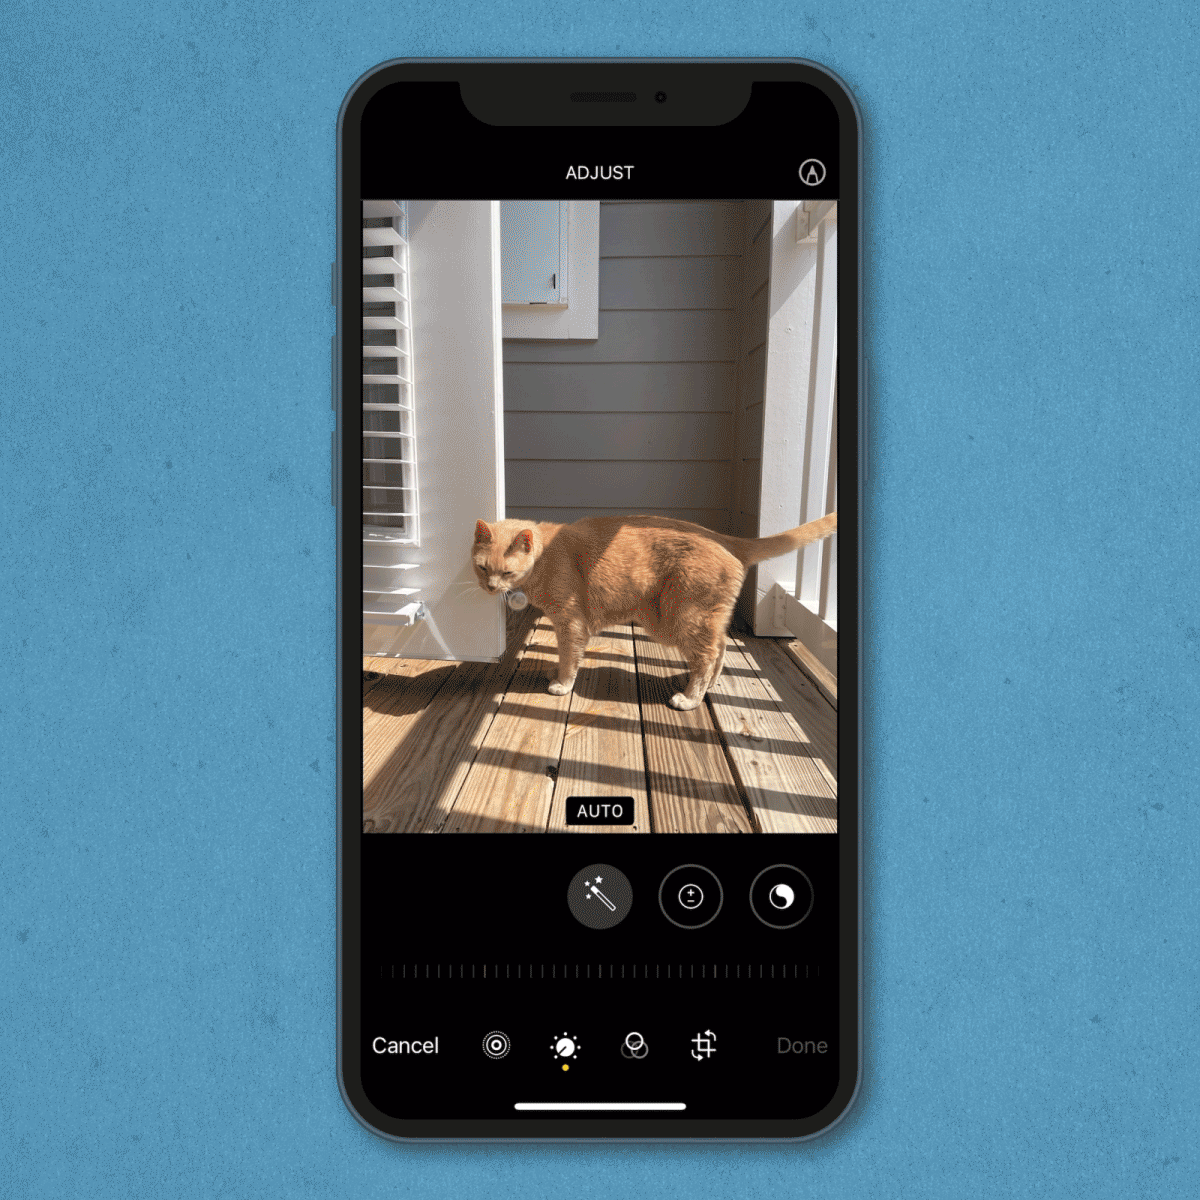 Como criar um GIF no Twitter usando a câmera do iPhone